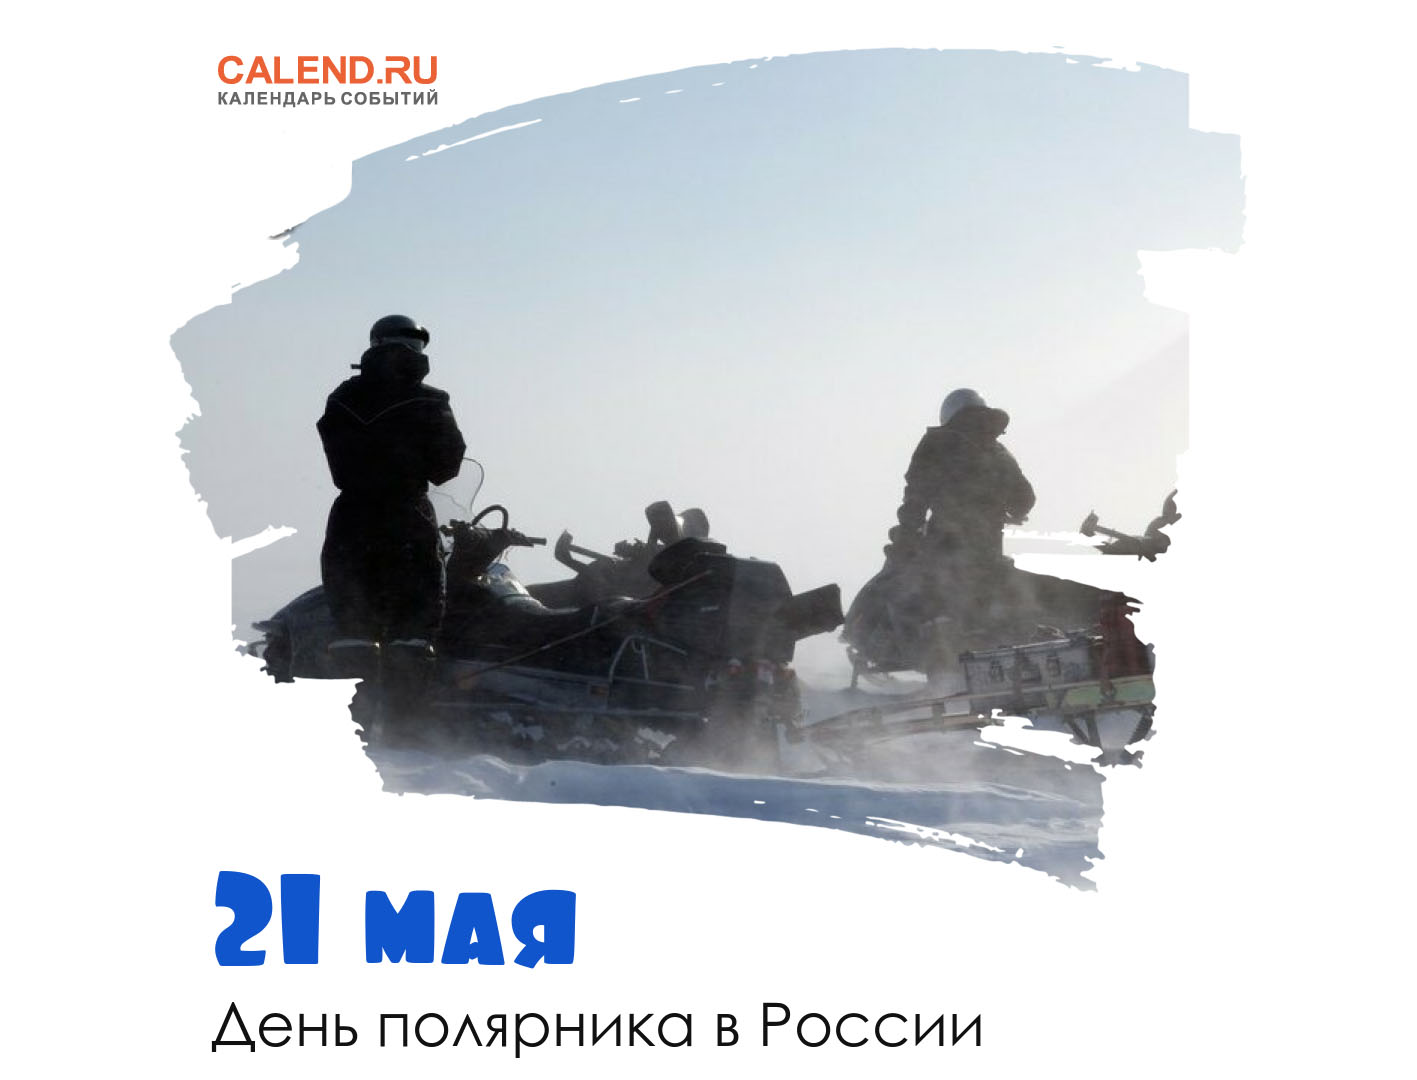 21 мая — День полярника в России / Открытка дня / Журнал Calend.ru